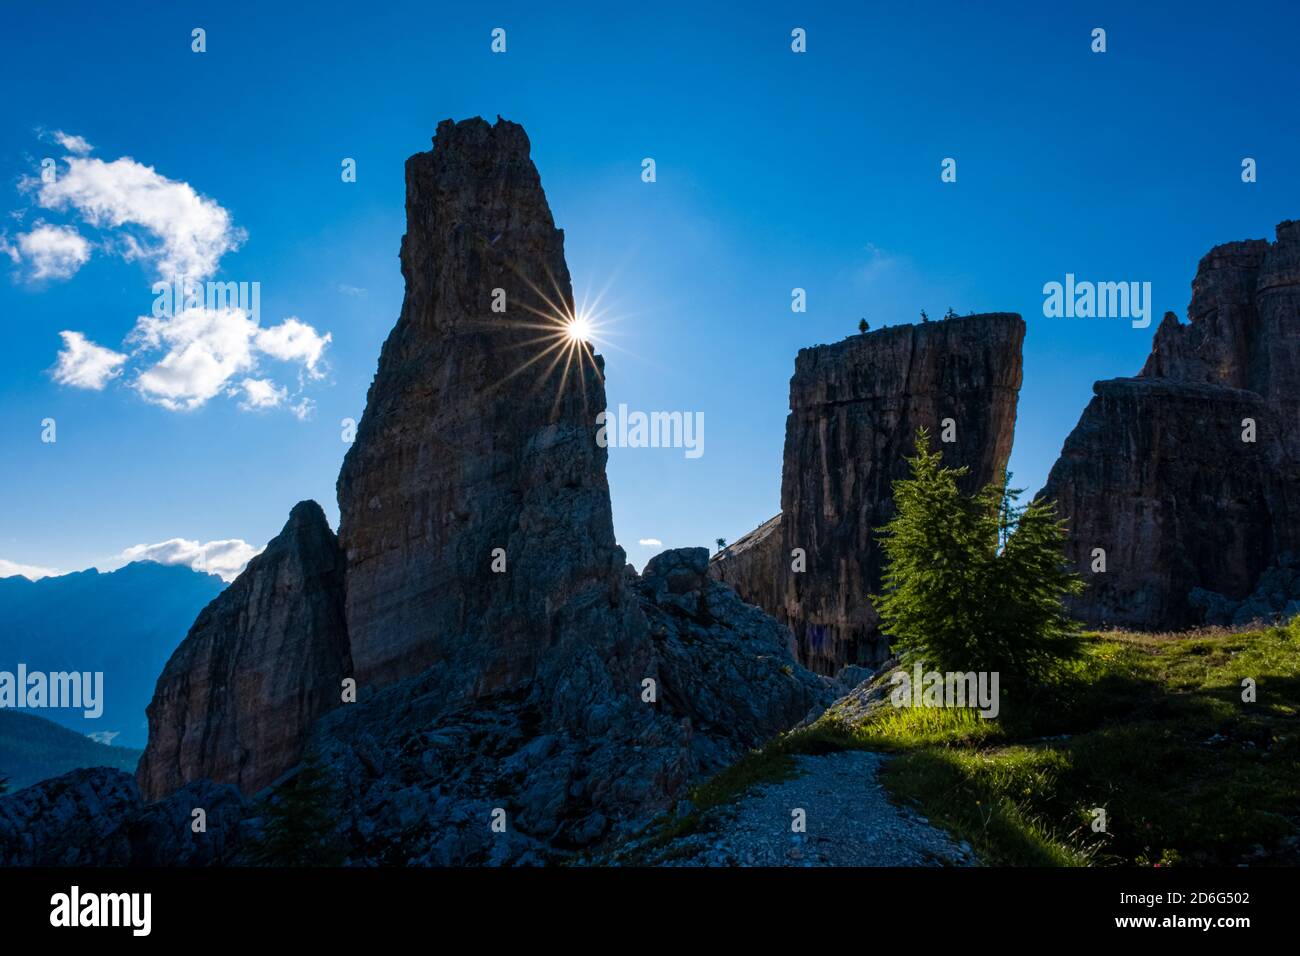 Paysage des Dolomiti avec la formation rocheuse Cinque Torri, Cinque Torri di Averau, le soleil se lève derrière Torre Inglese. Banque D'Images